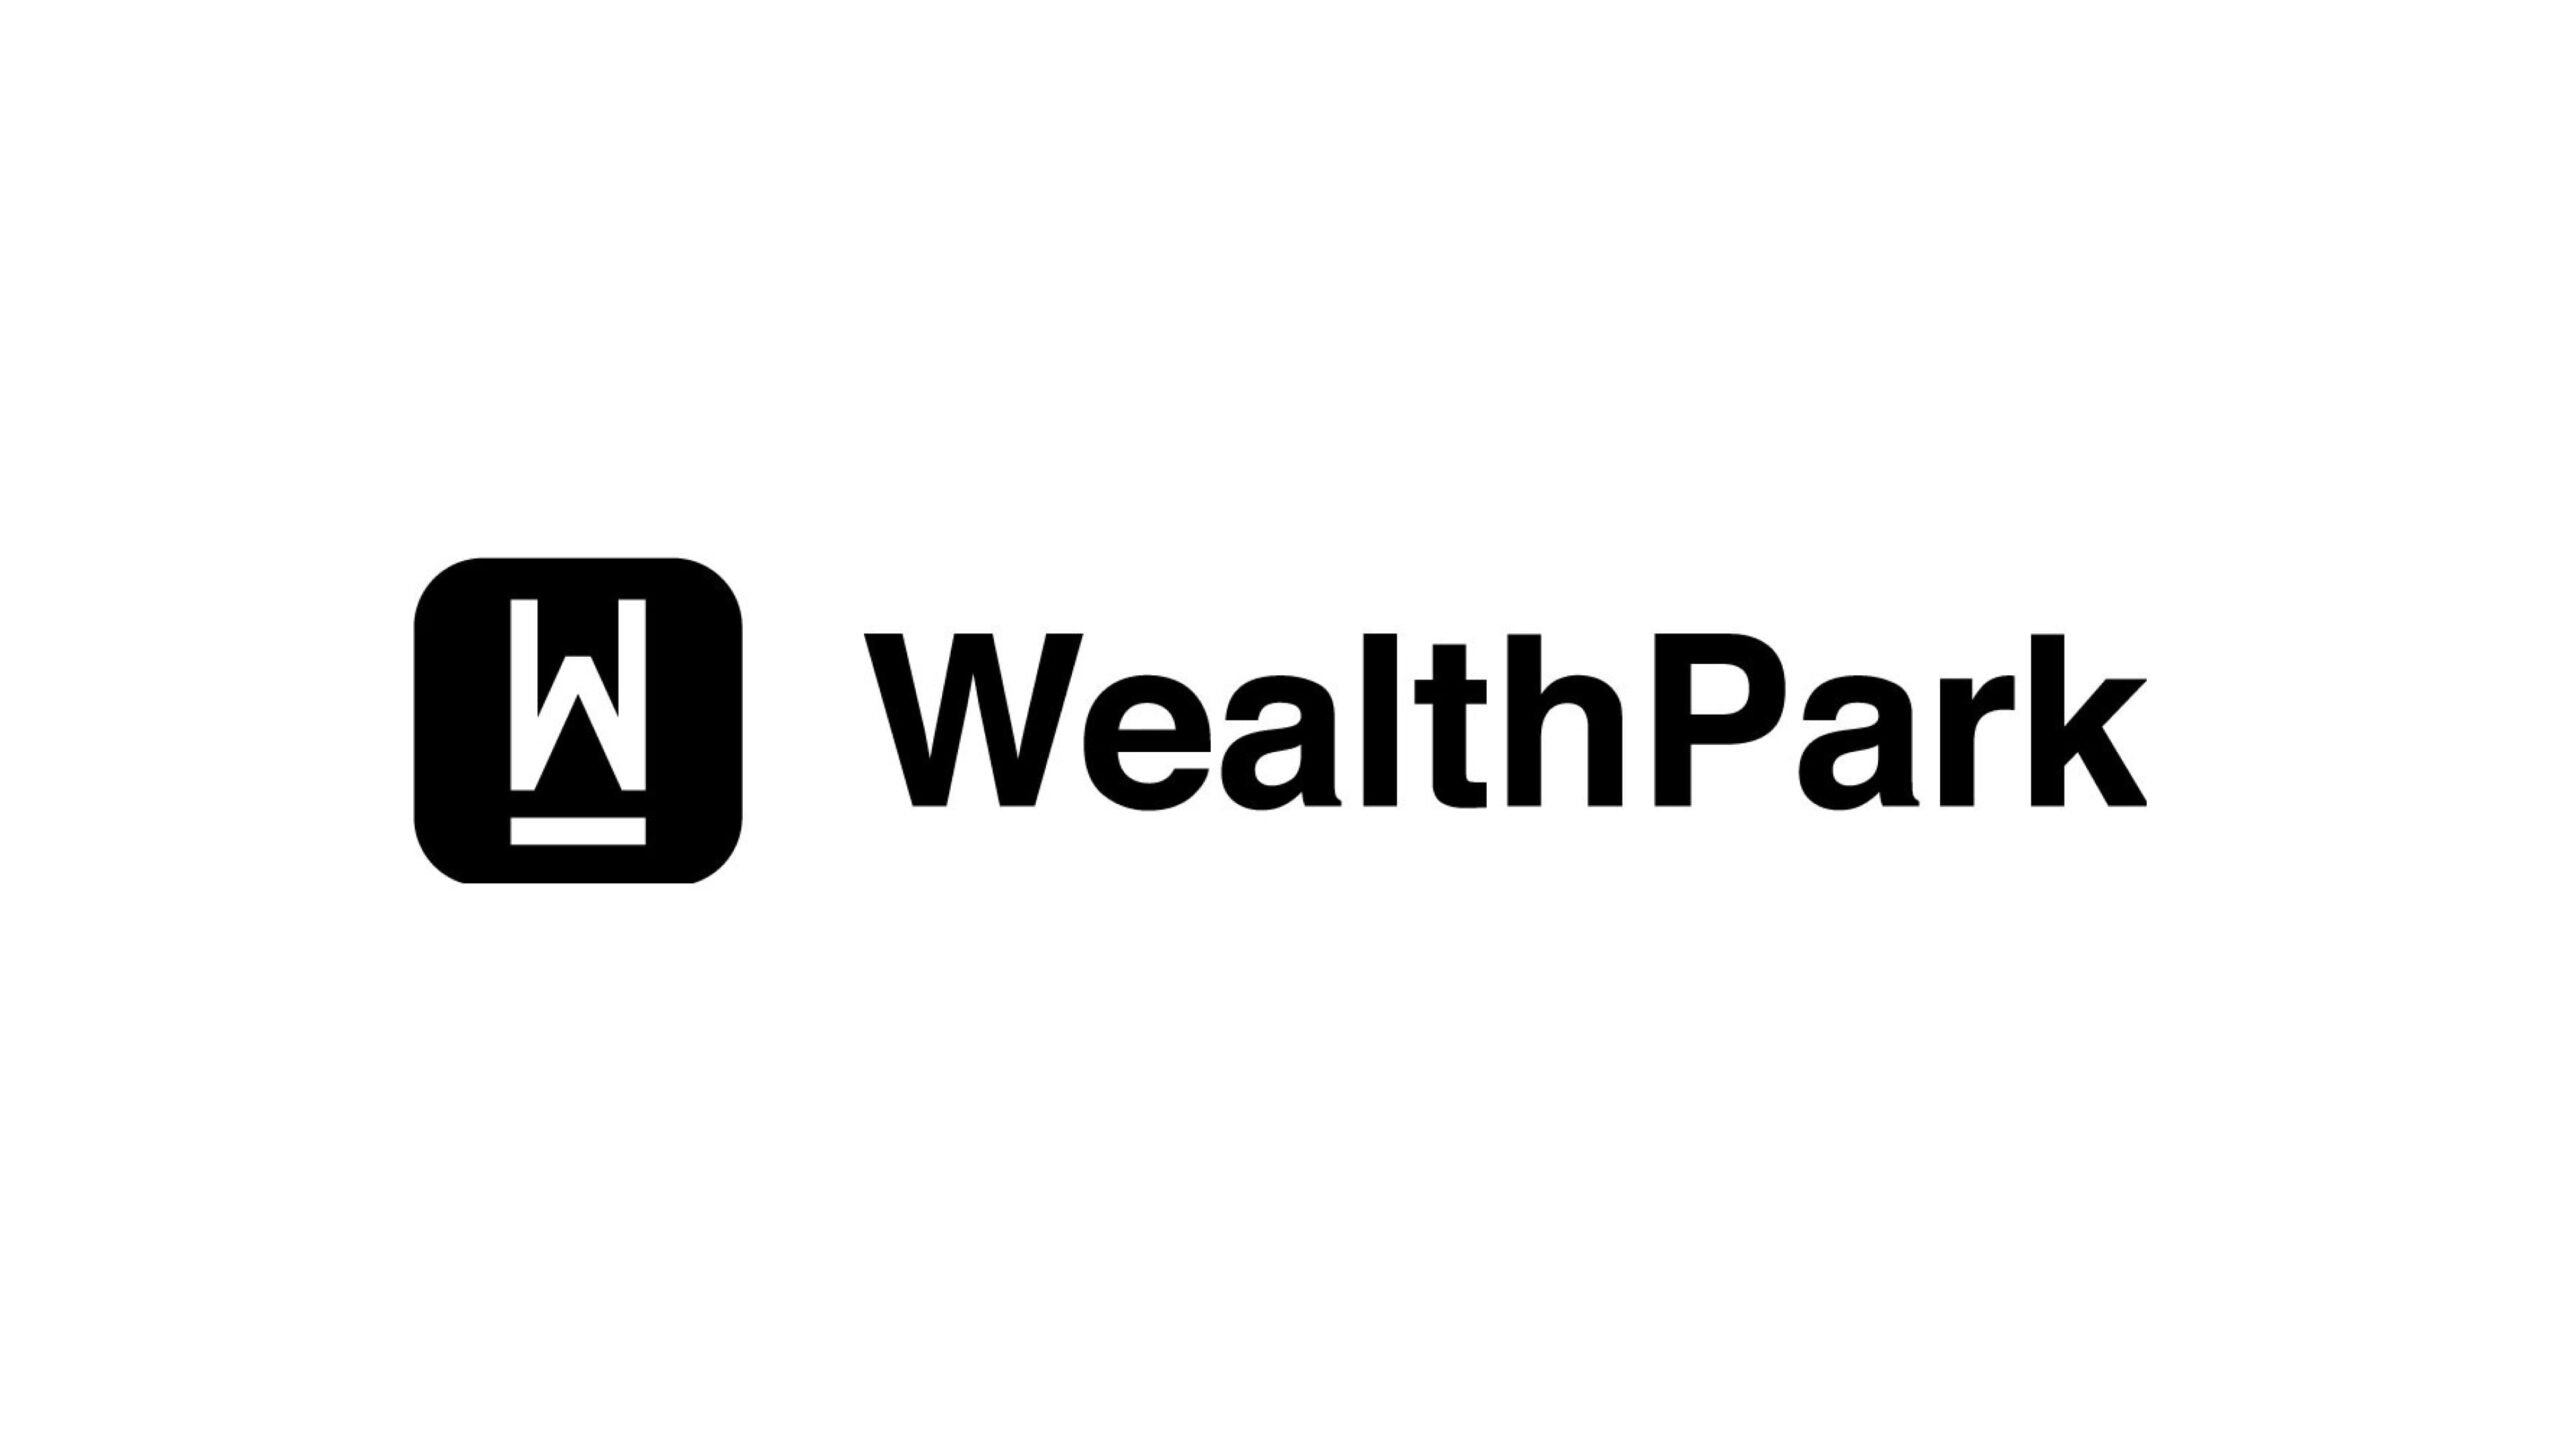 オルタナティブ投資プラットフォームを目指すWealthPark株式会社、総額25.1億円の資金調達を実施